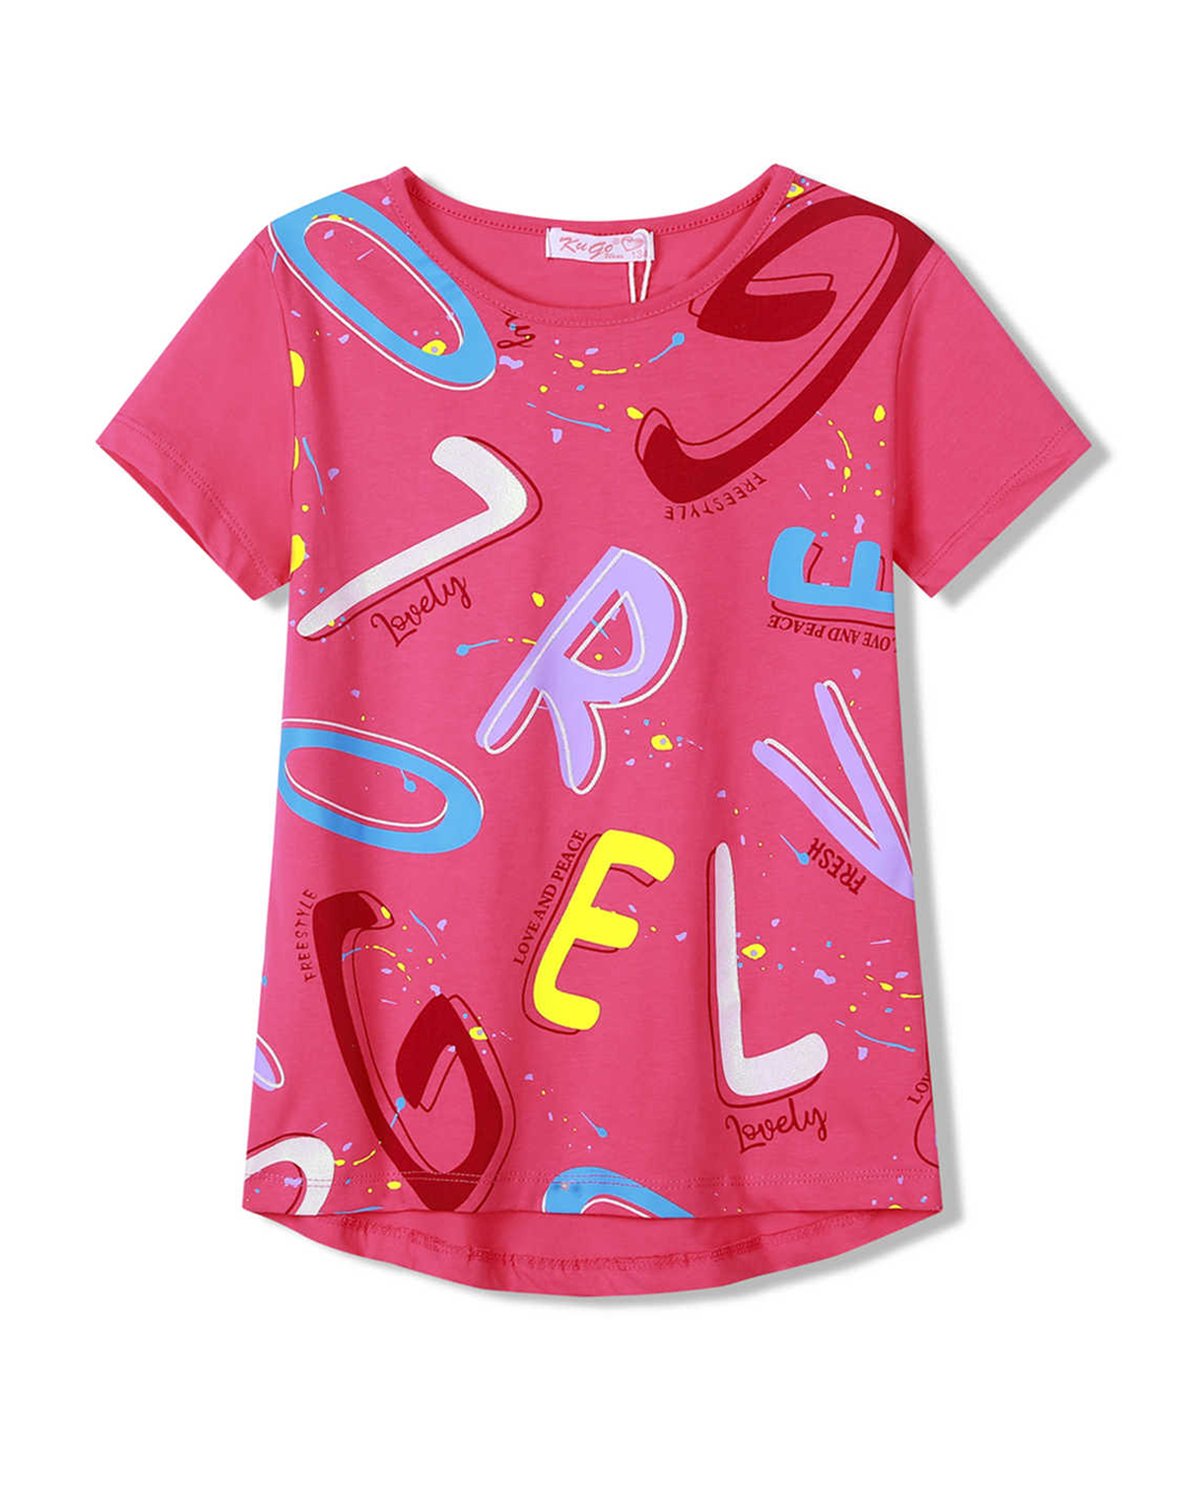 Dívčí tričko - KUGO HC9335, růžová Barva: Růžová, Velikost: 158